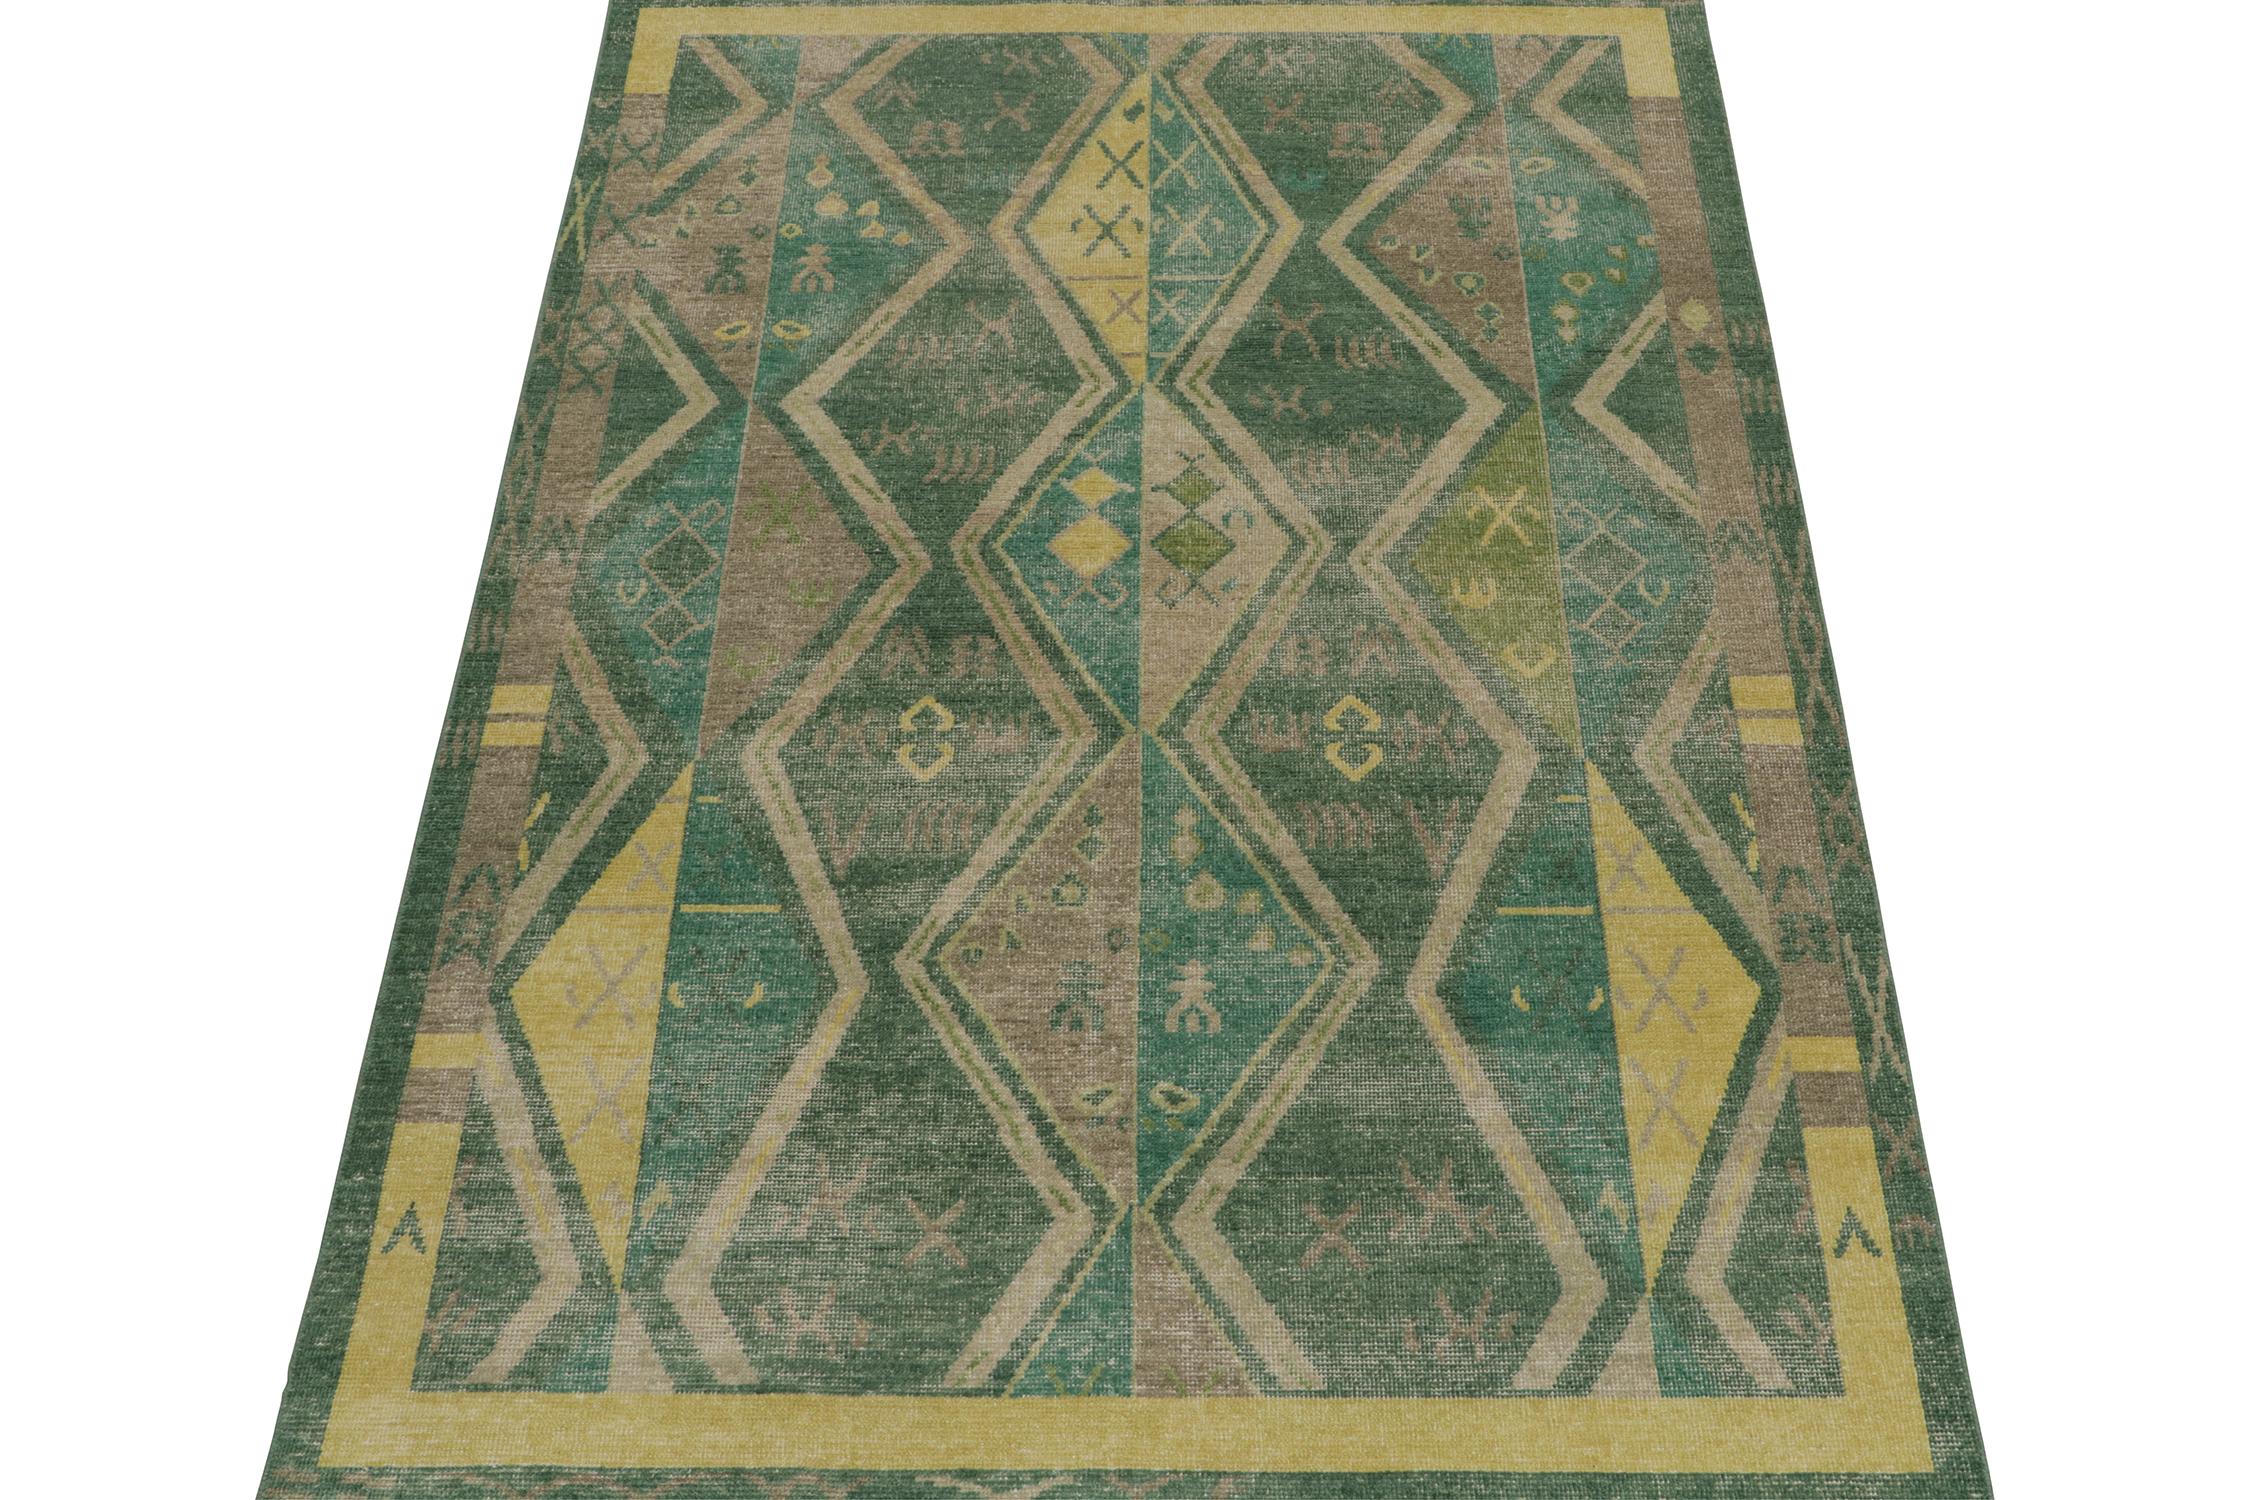 Ce tapis 6x9 est une nouveauté audacieuse de la Collection Homage de Rug & Kilim. Noué à la main en laine, son design célèbre les anciens tapis tribaux Yuruk dans des couleurs fraîches et modernes et une approche texturale unique. 

Plus loin dans